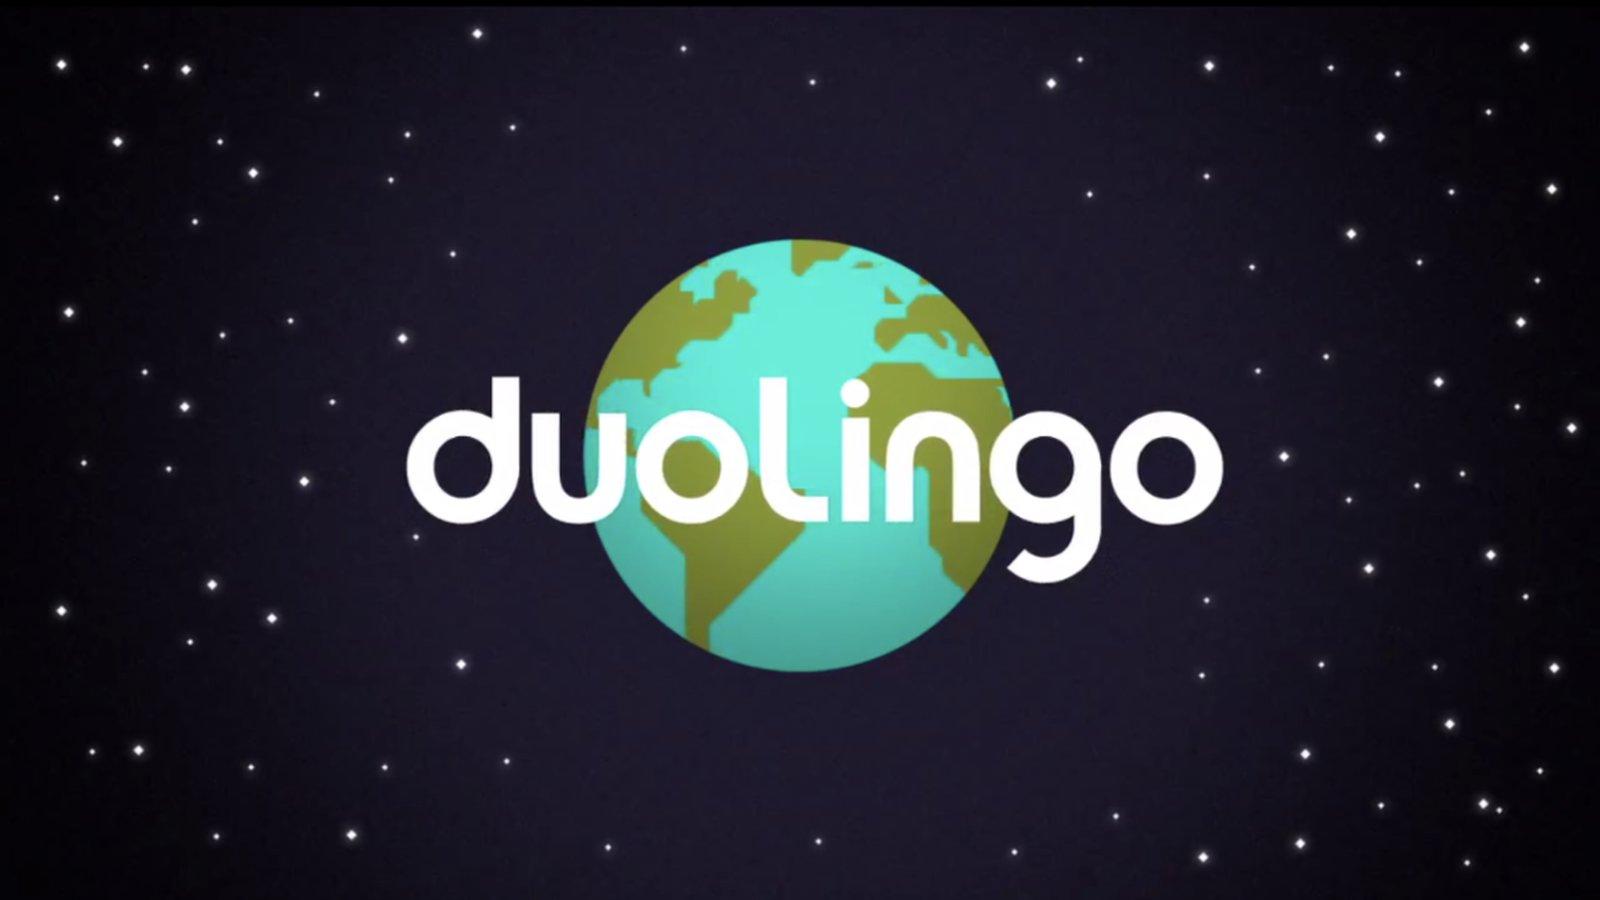 Here is a nice high quality Super Duolingo wallpaper  rduolingo